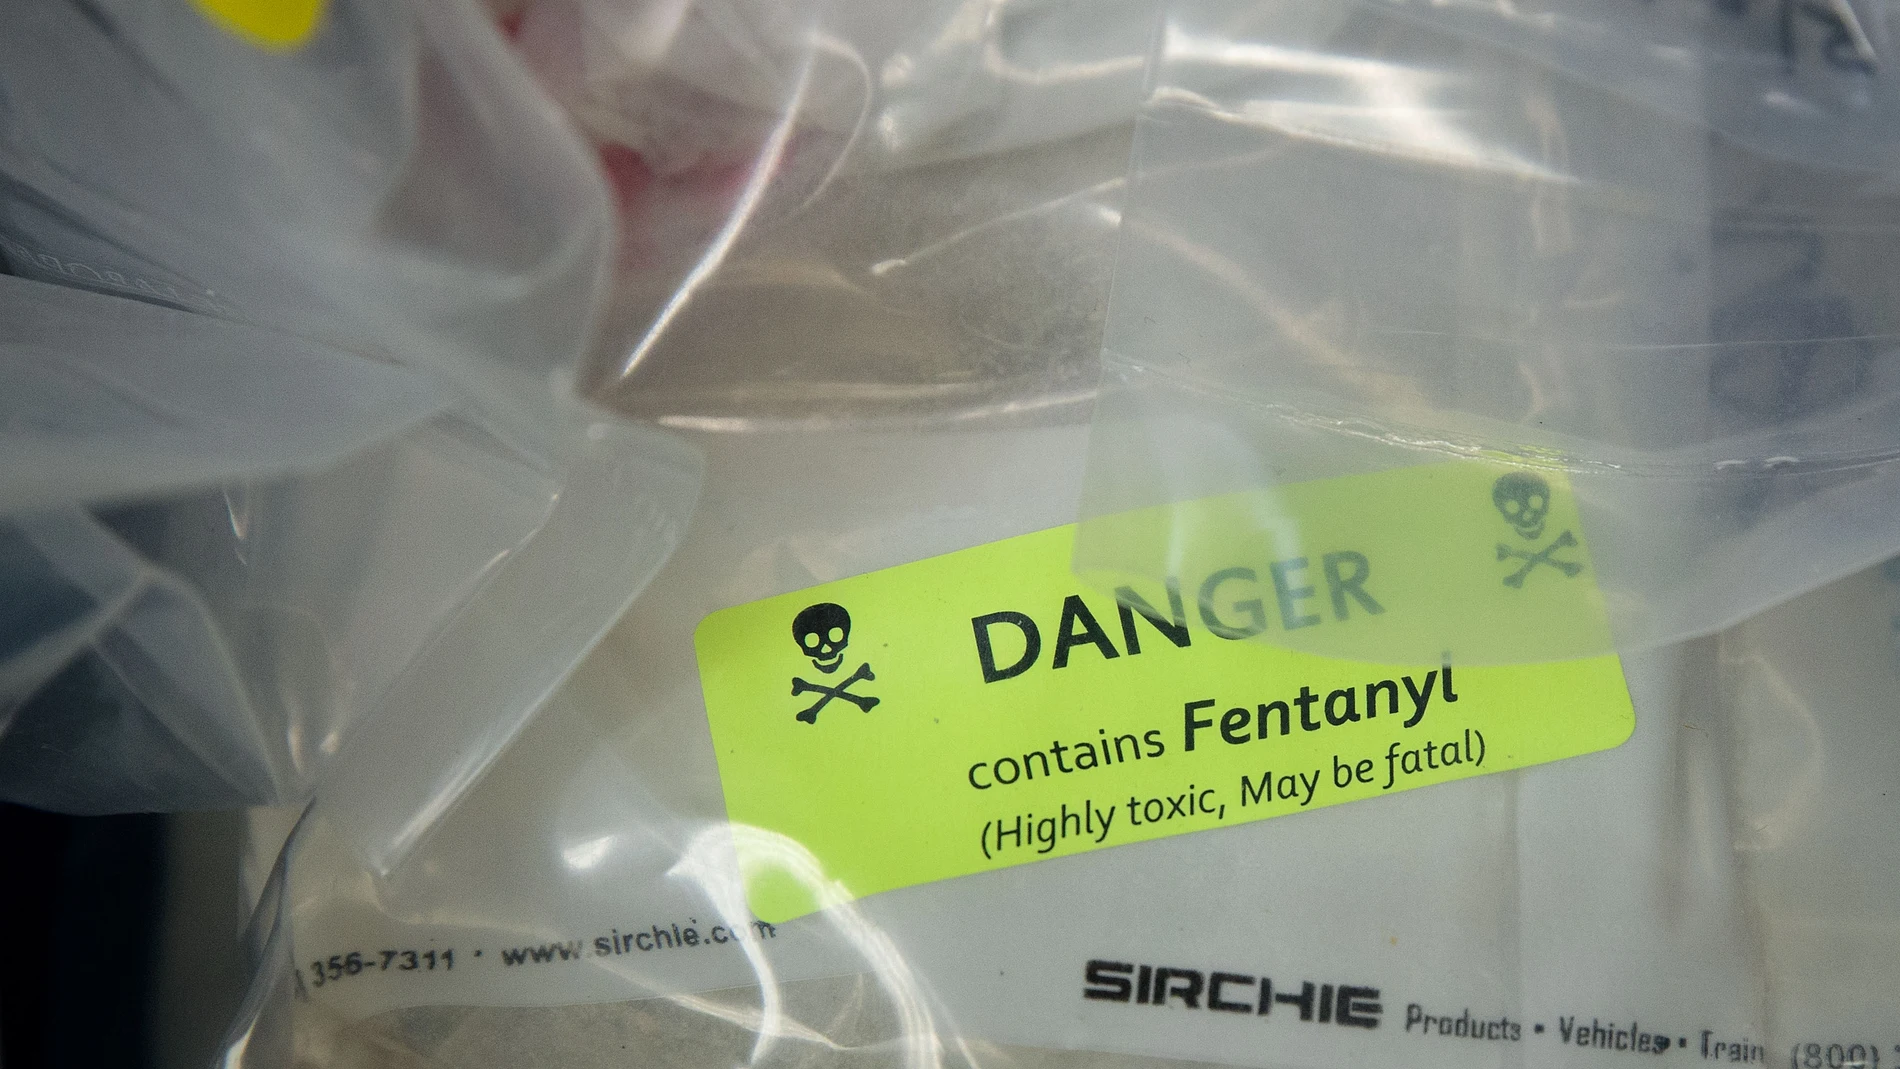 Incautan más de 23 kilos de fentanilo, cantidad suficiente para matar a la mitad de Florida (EEUU)